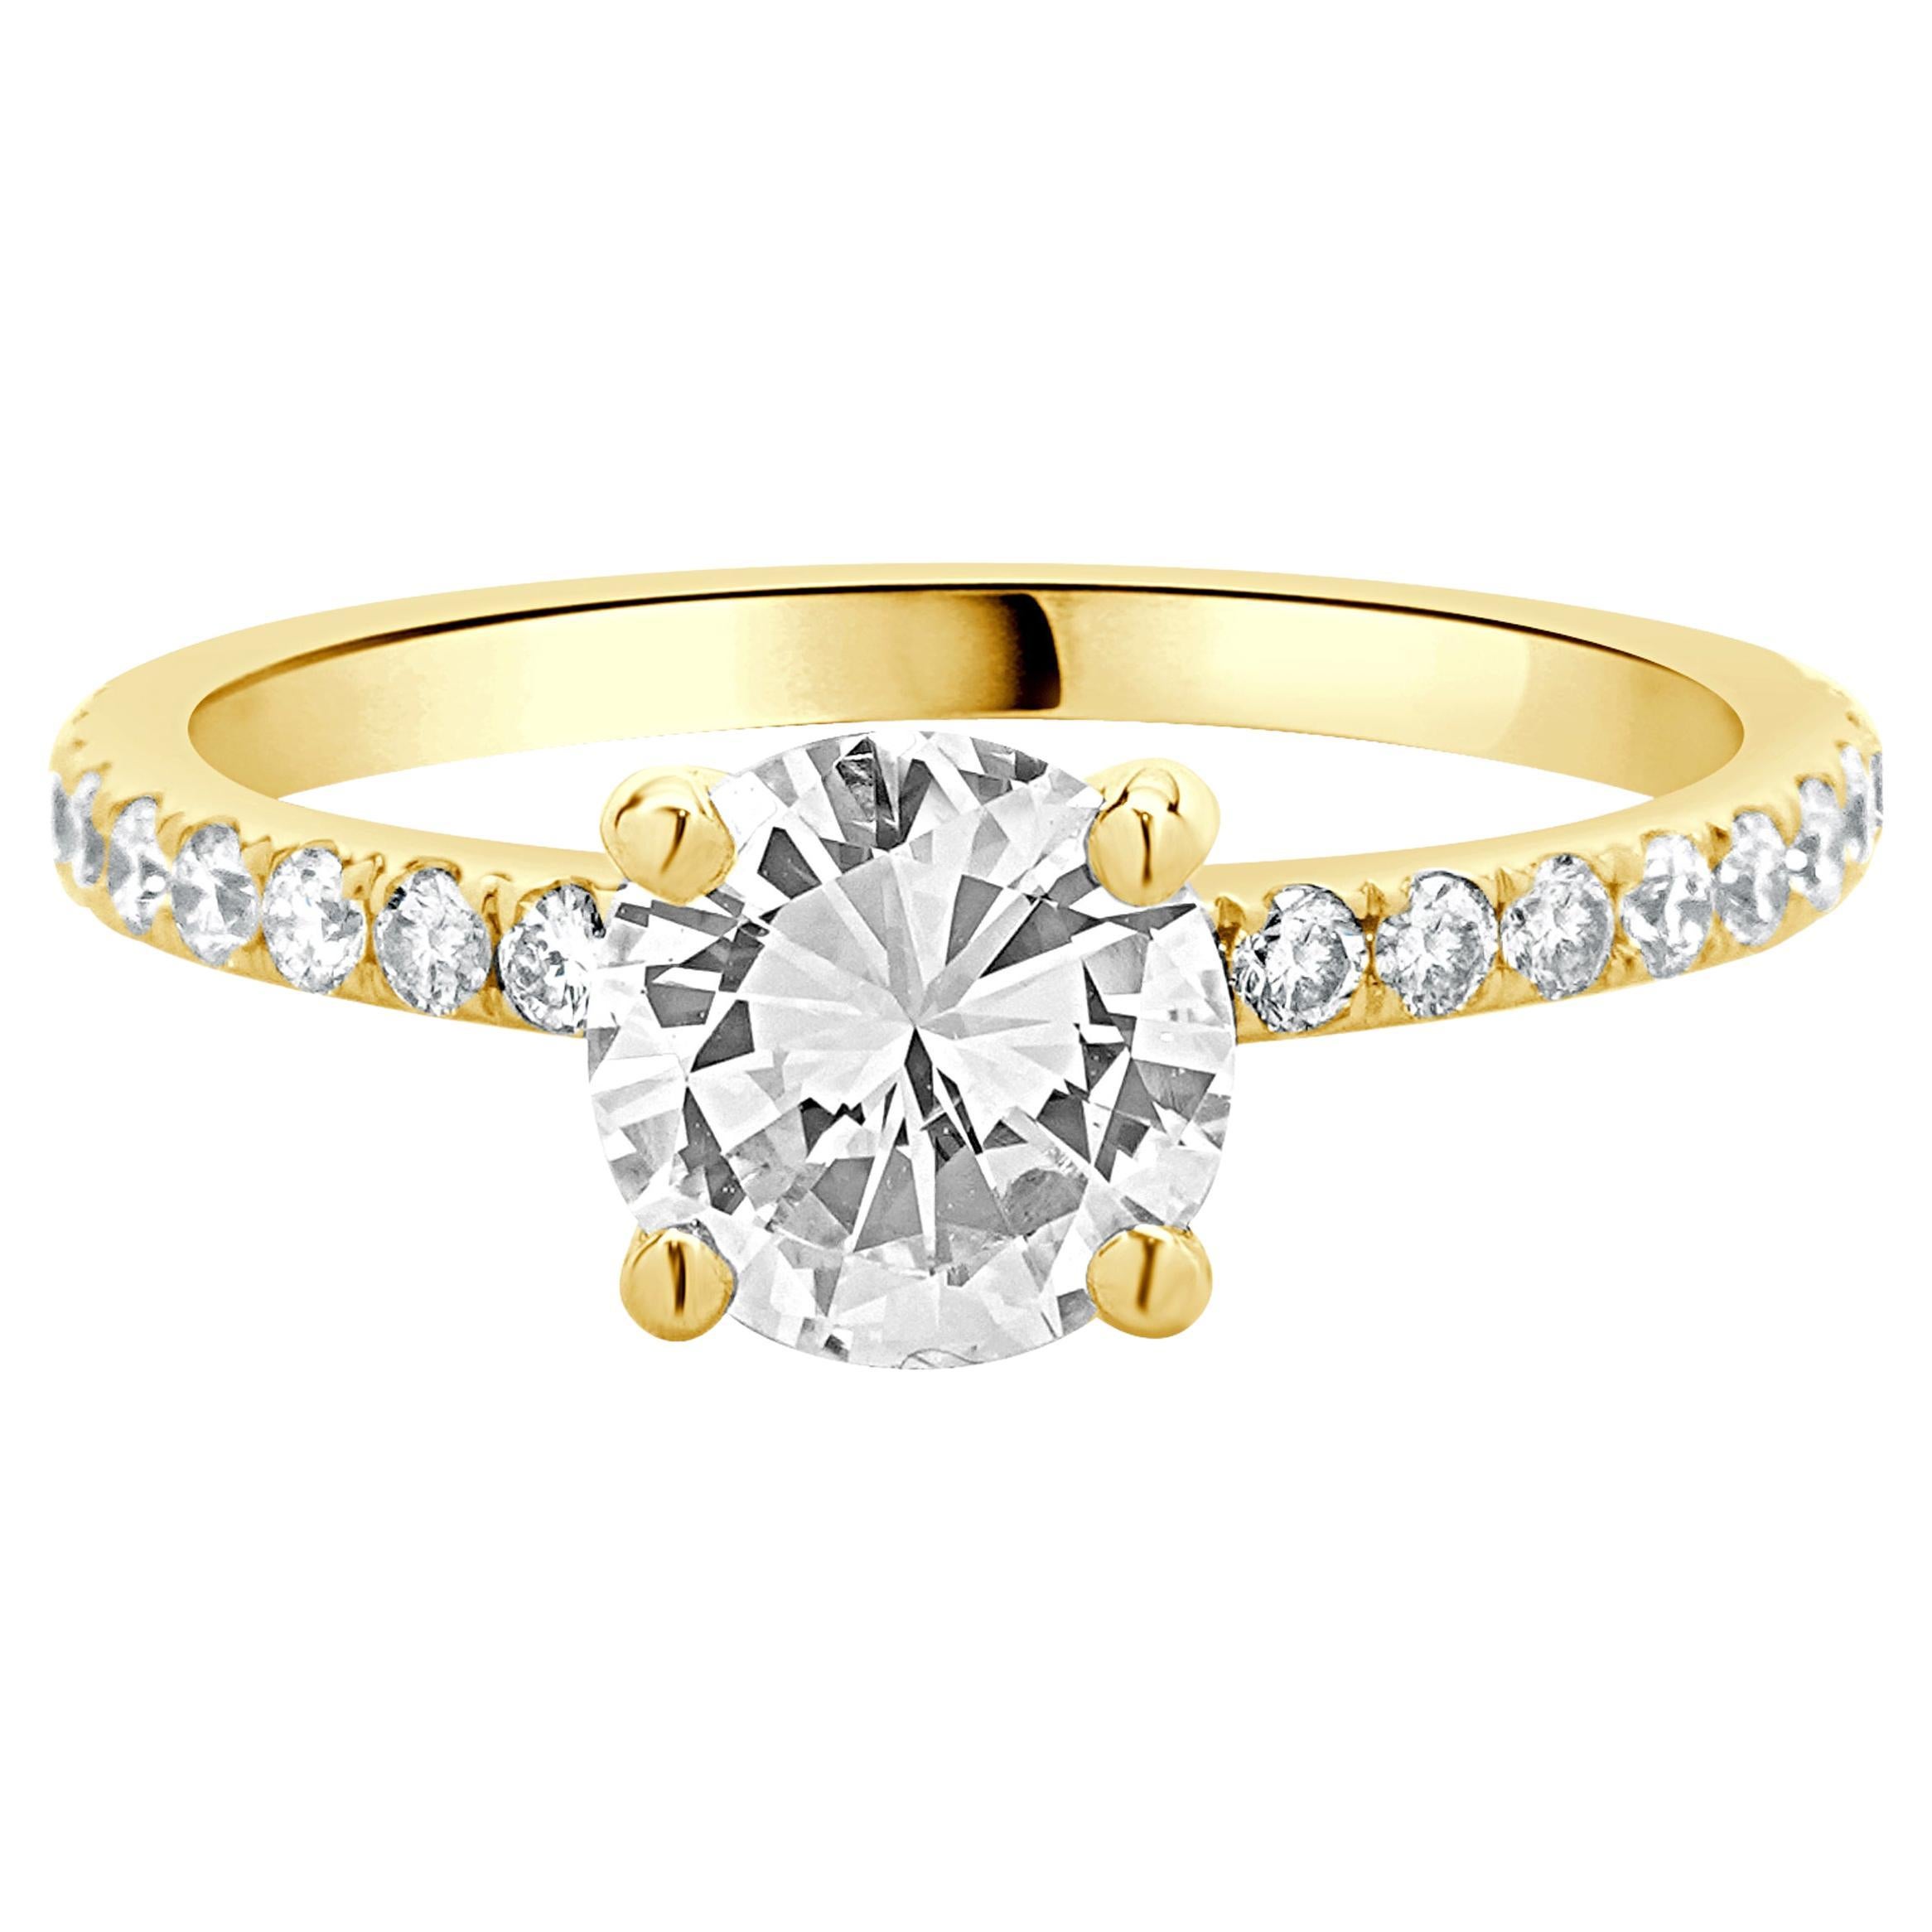 Verlobungsring aus 14 Karat Gelbgold mit rundem Diamanten im Brillantschliff